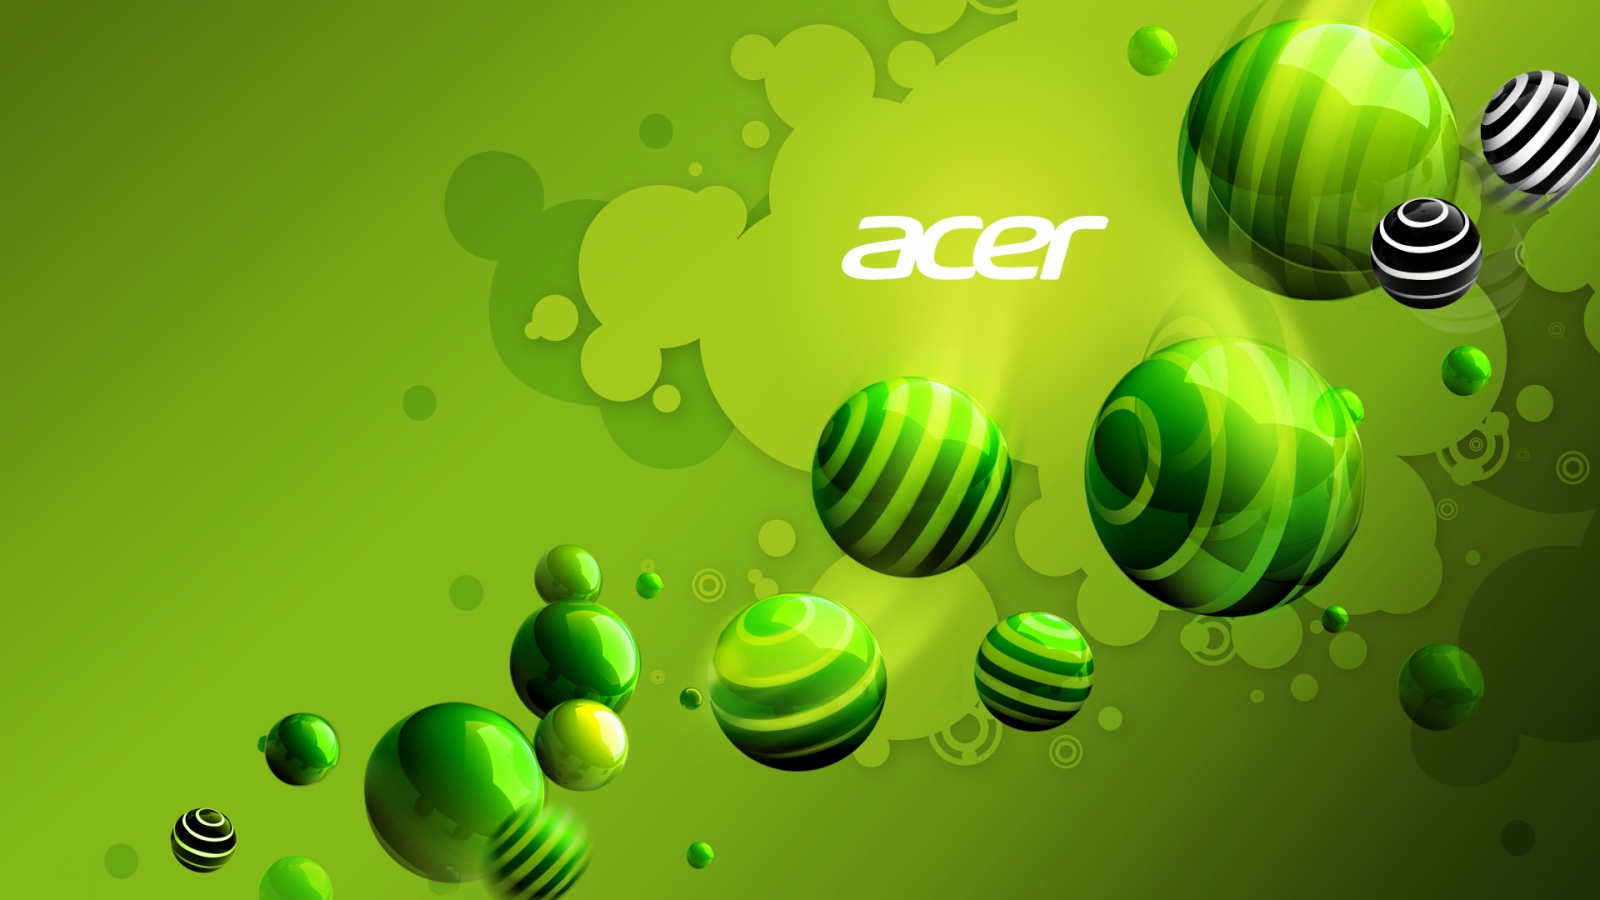 Acer Green World for 1600 x 900 HDTV resolution